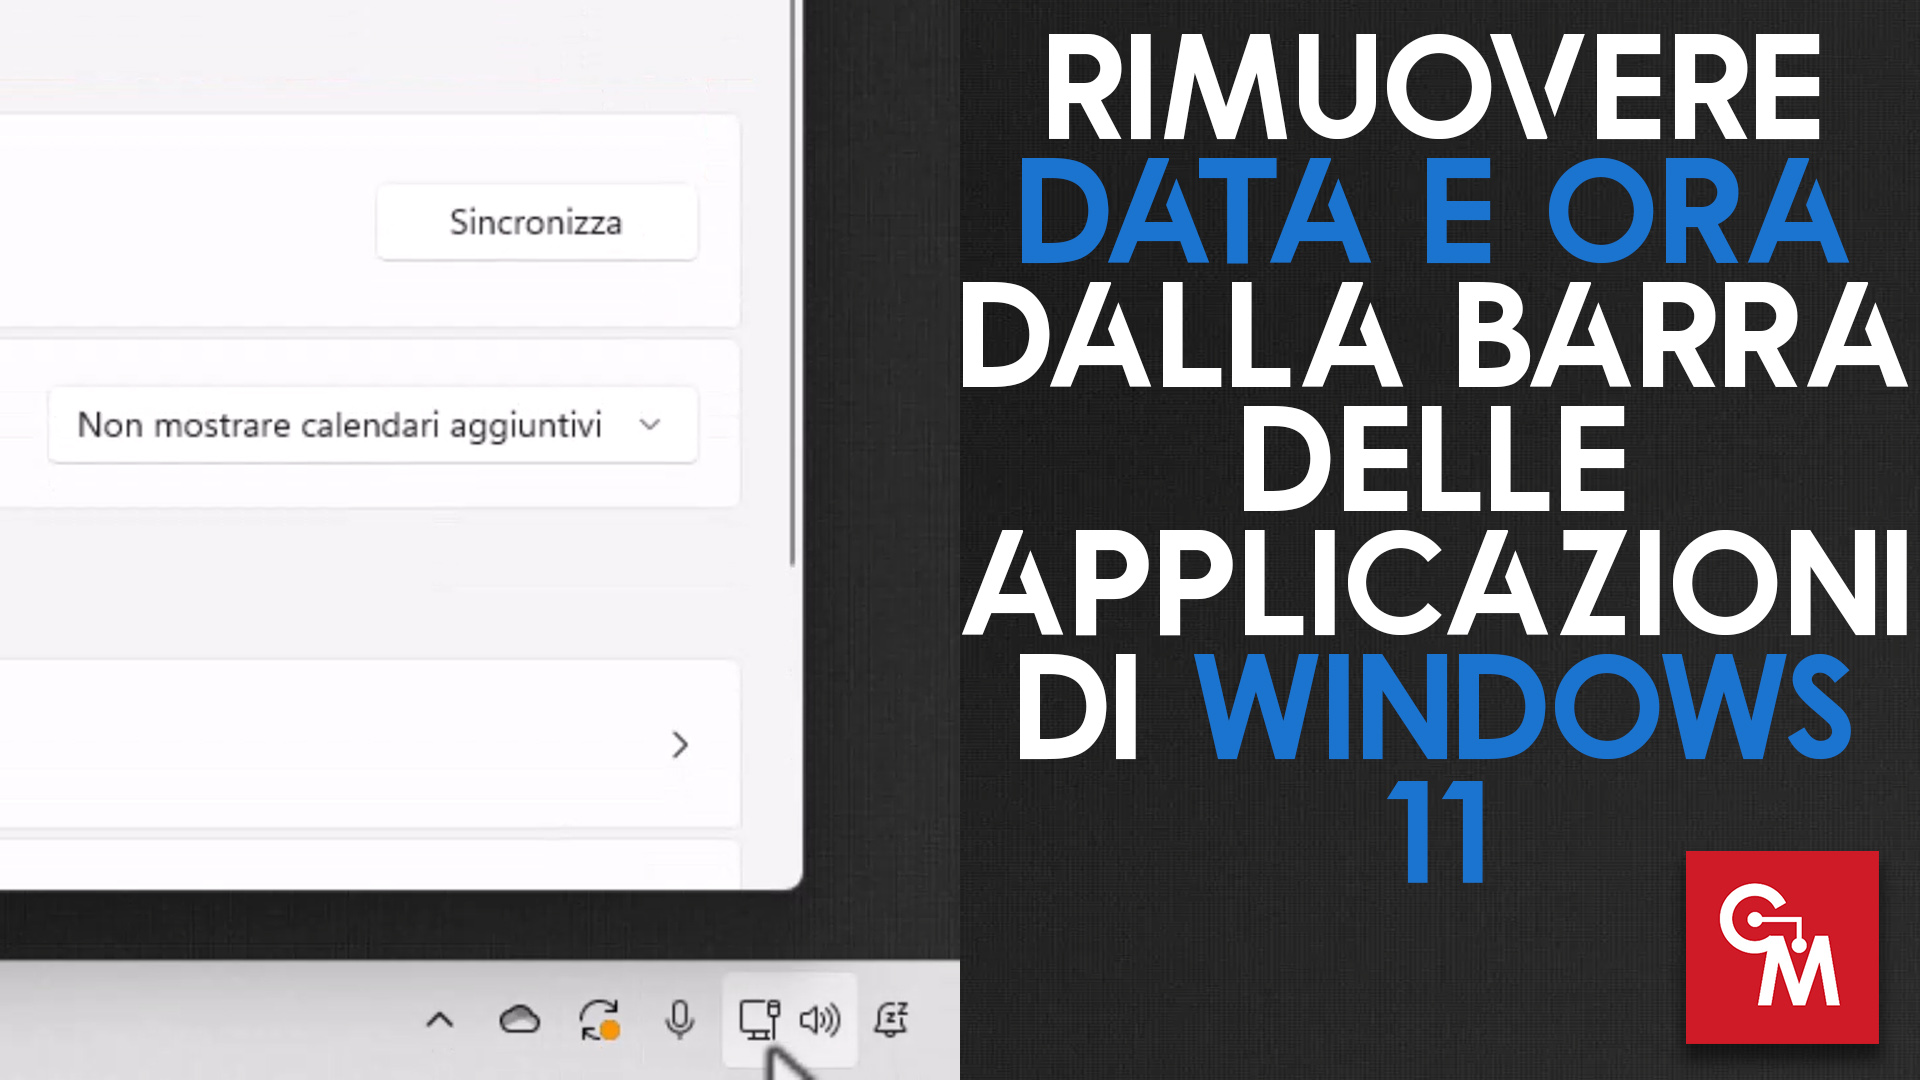 Rimuovere data e ora dalla barra delle applicazioni di Windows 11